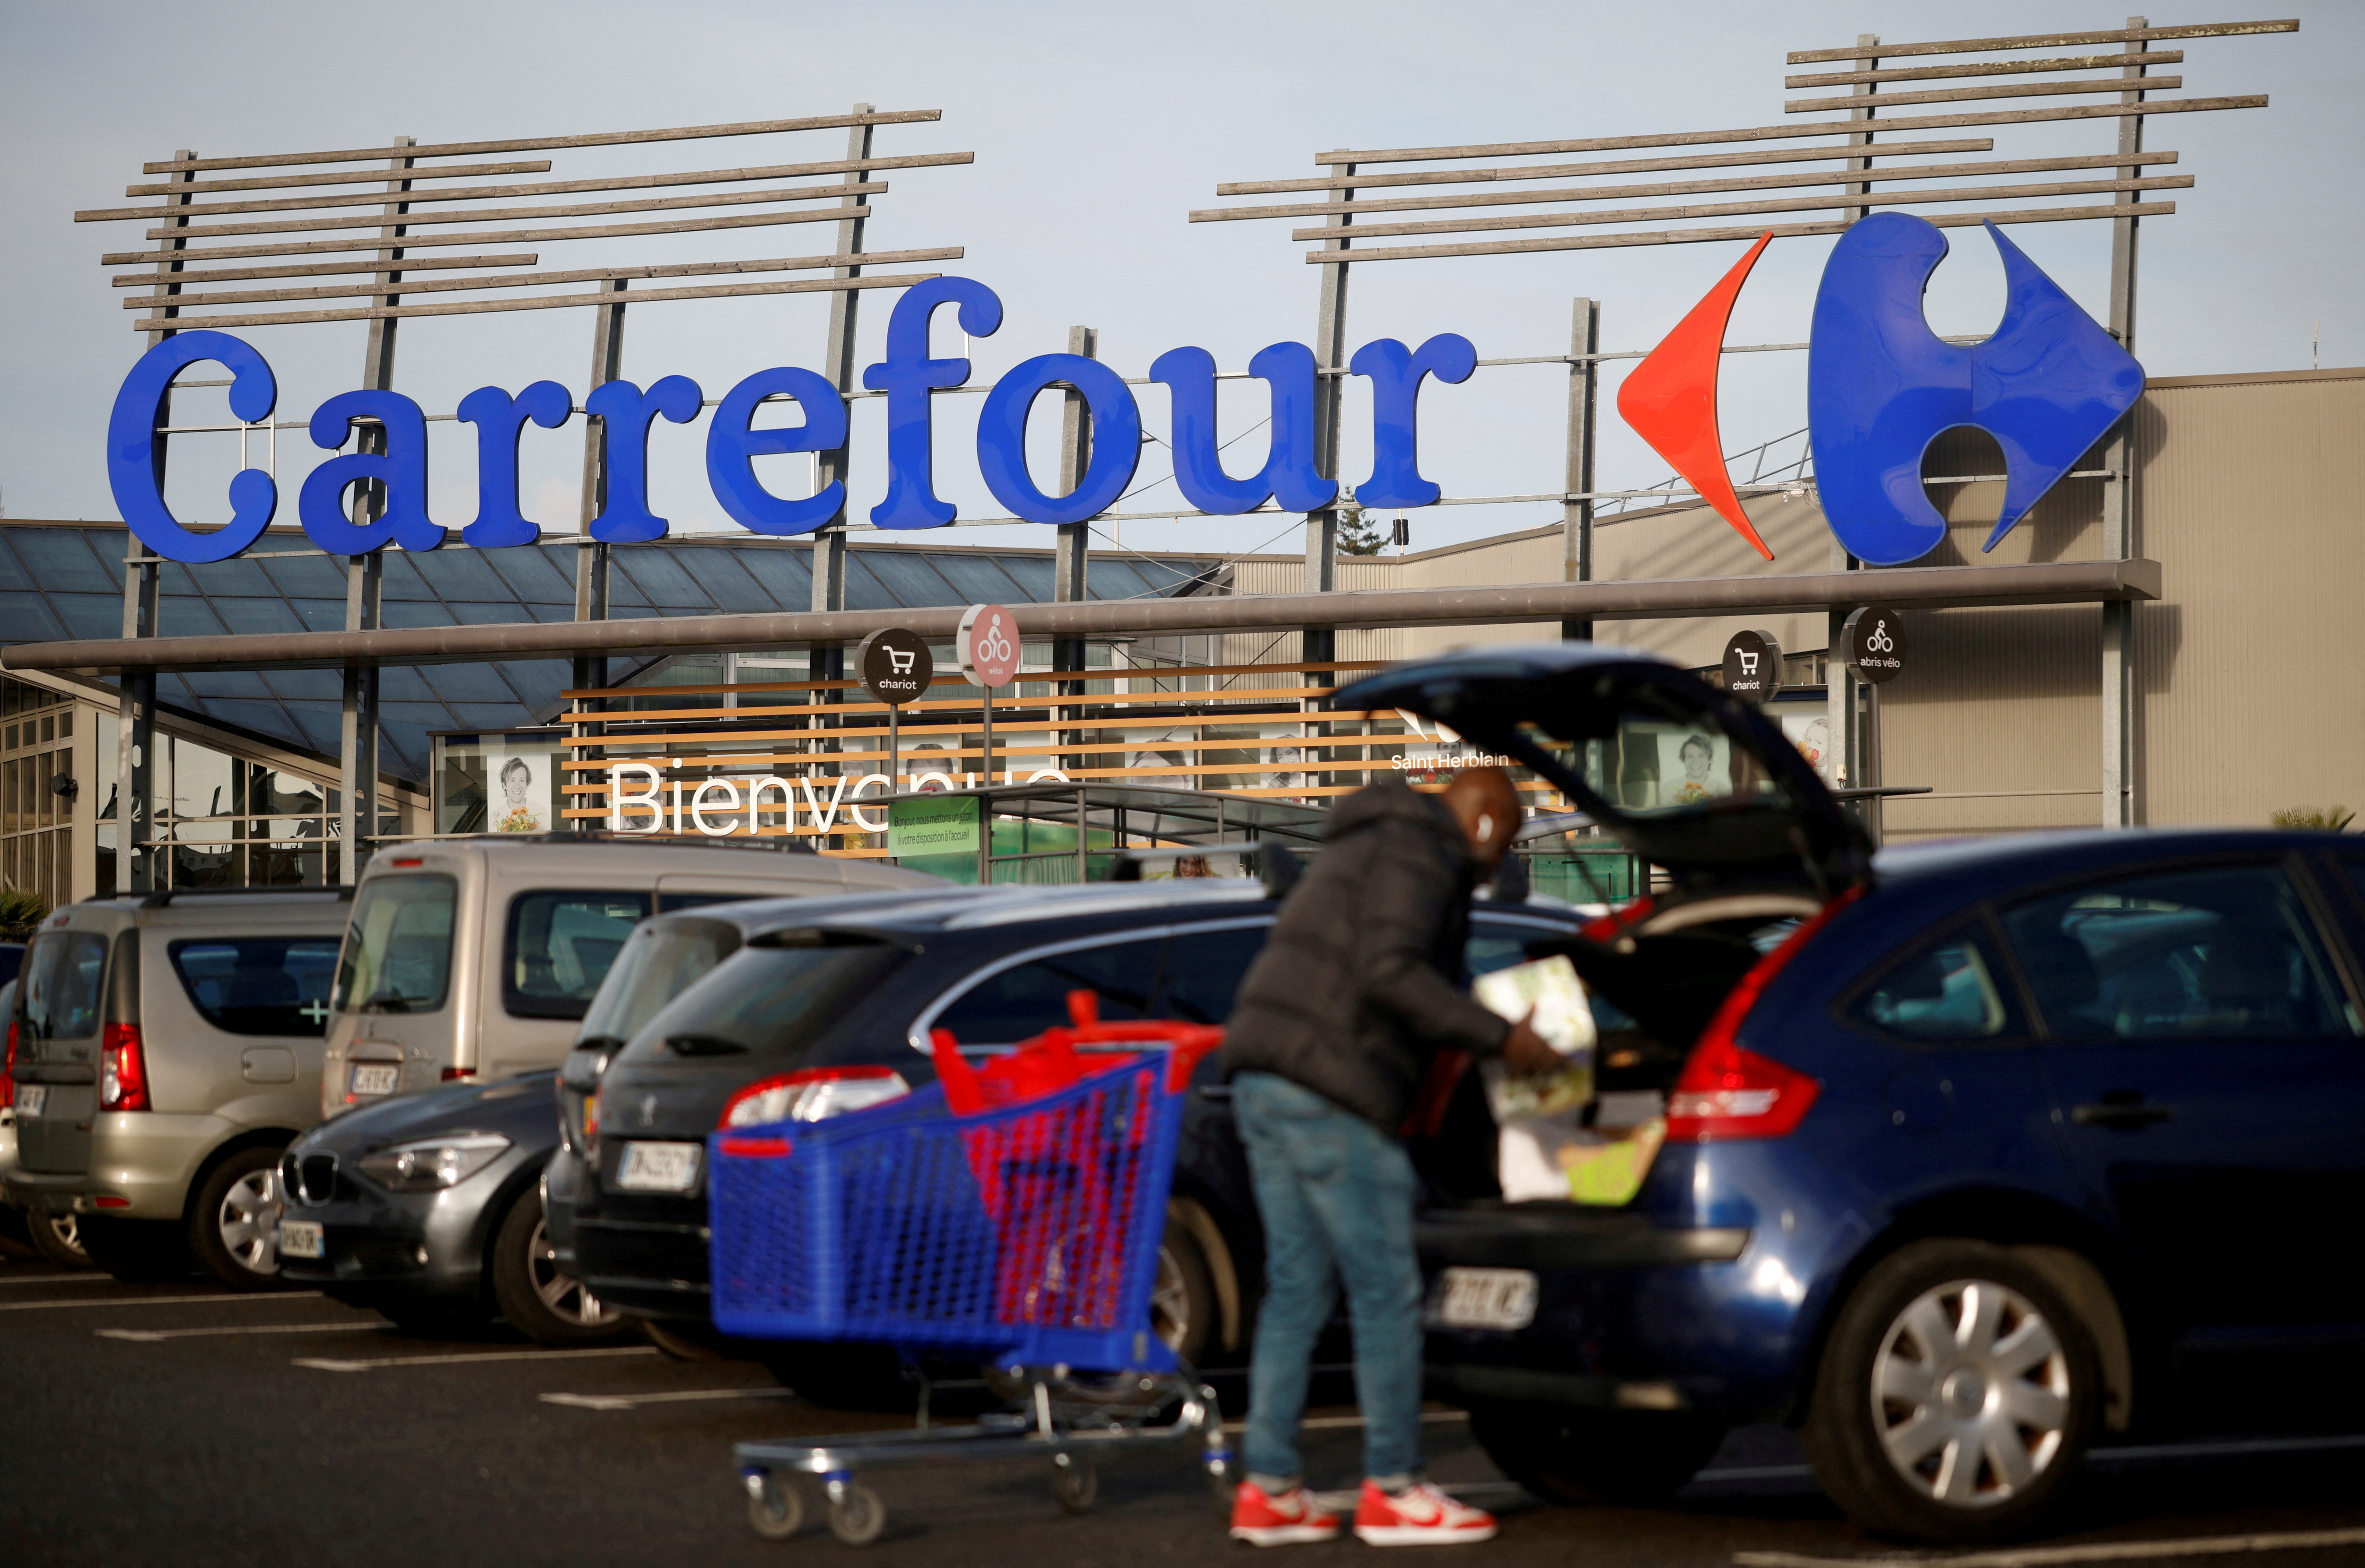 Carrefour organiza mesas redondas con clientes franceses todos los miércoles para saber qué productos les gustaría tener en oferta